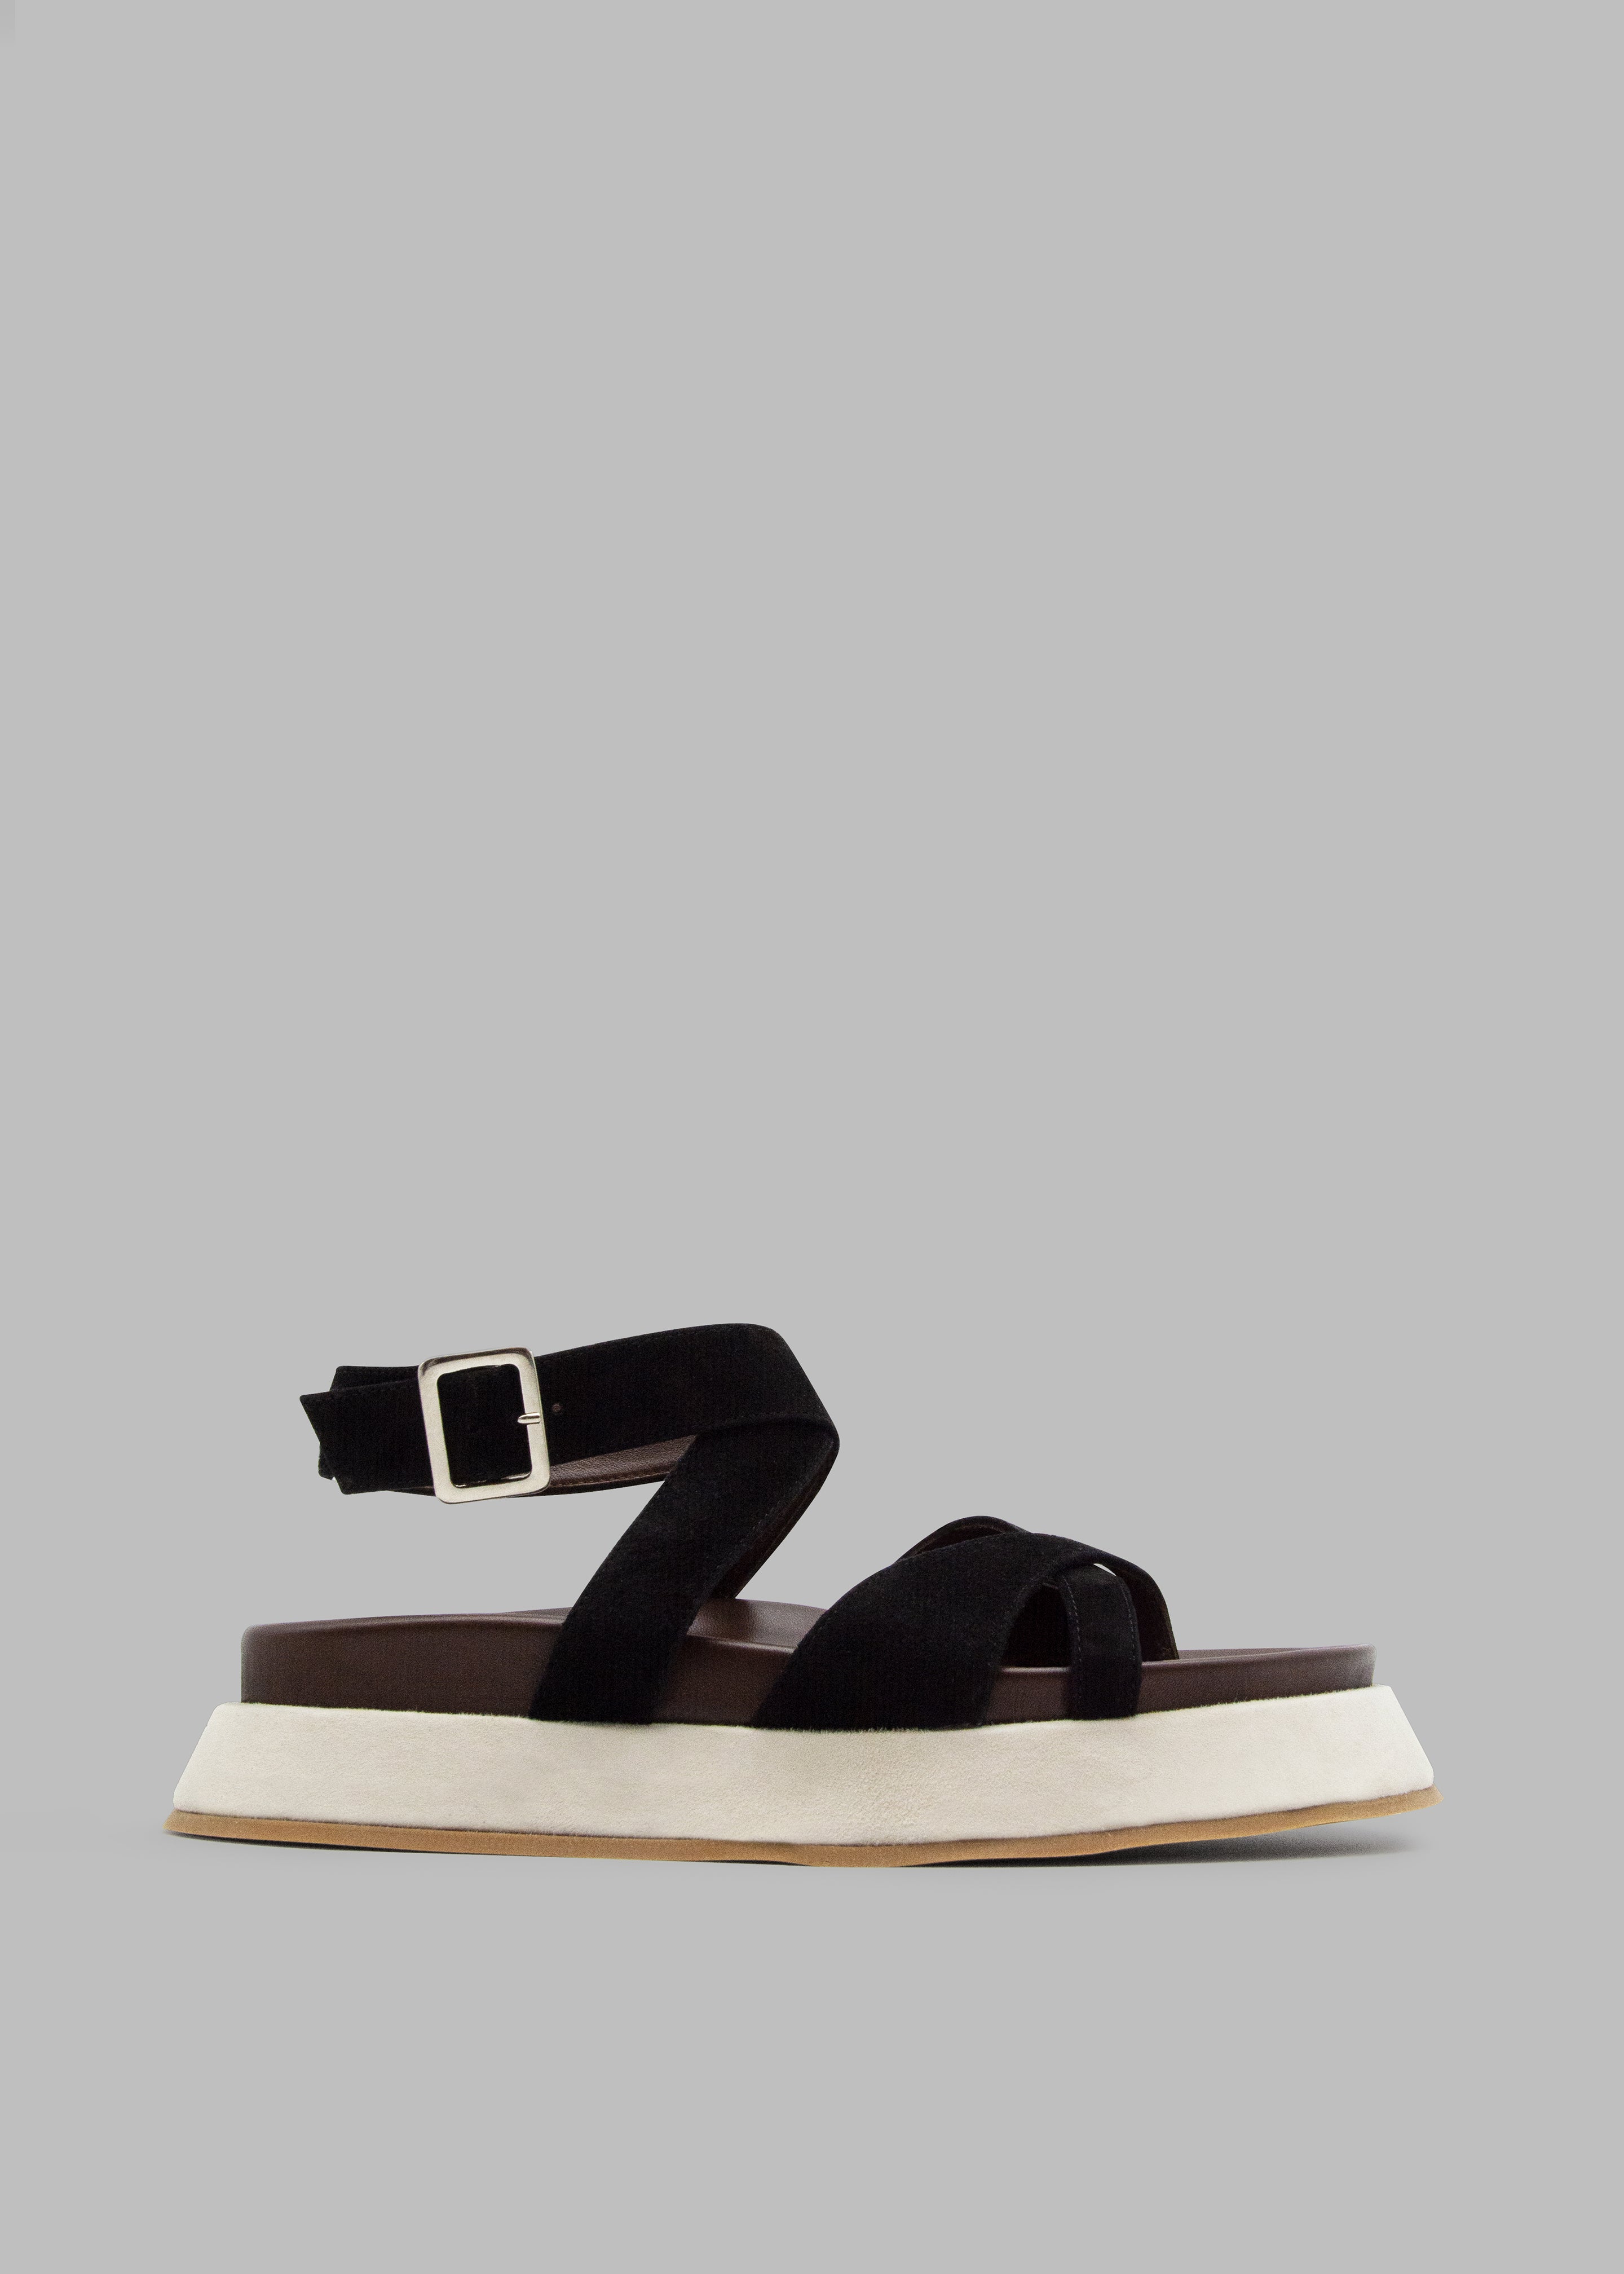 Gia Borghini Rosie 41 Flat Sandals - Black/Chocolate/Beige - 1